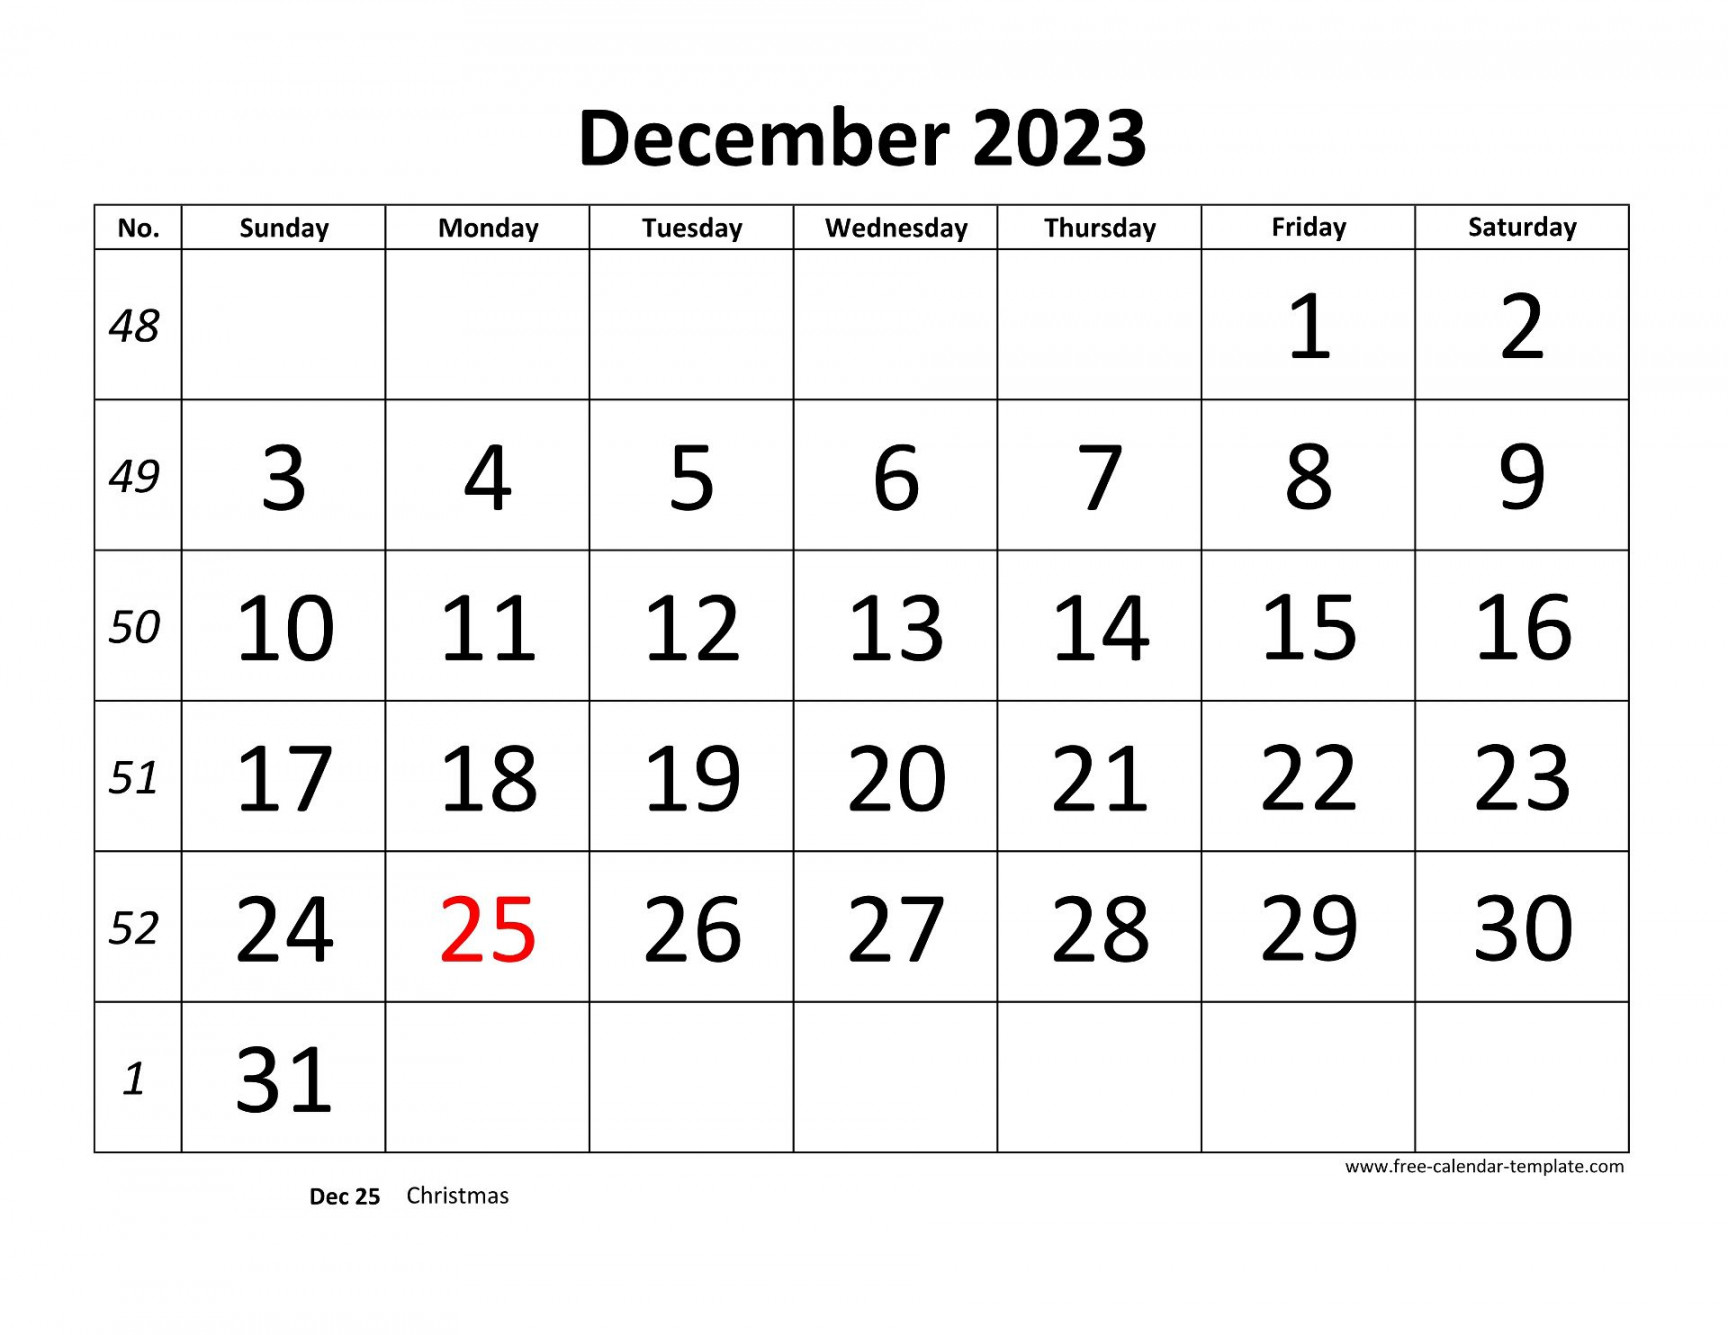 December  Free Calendar Tempplate  Free-calendar-template